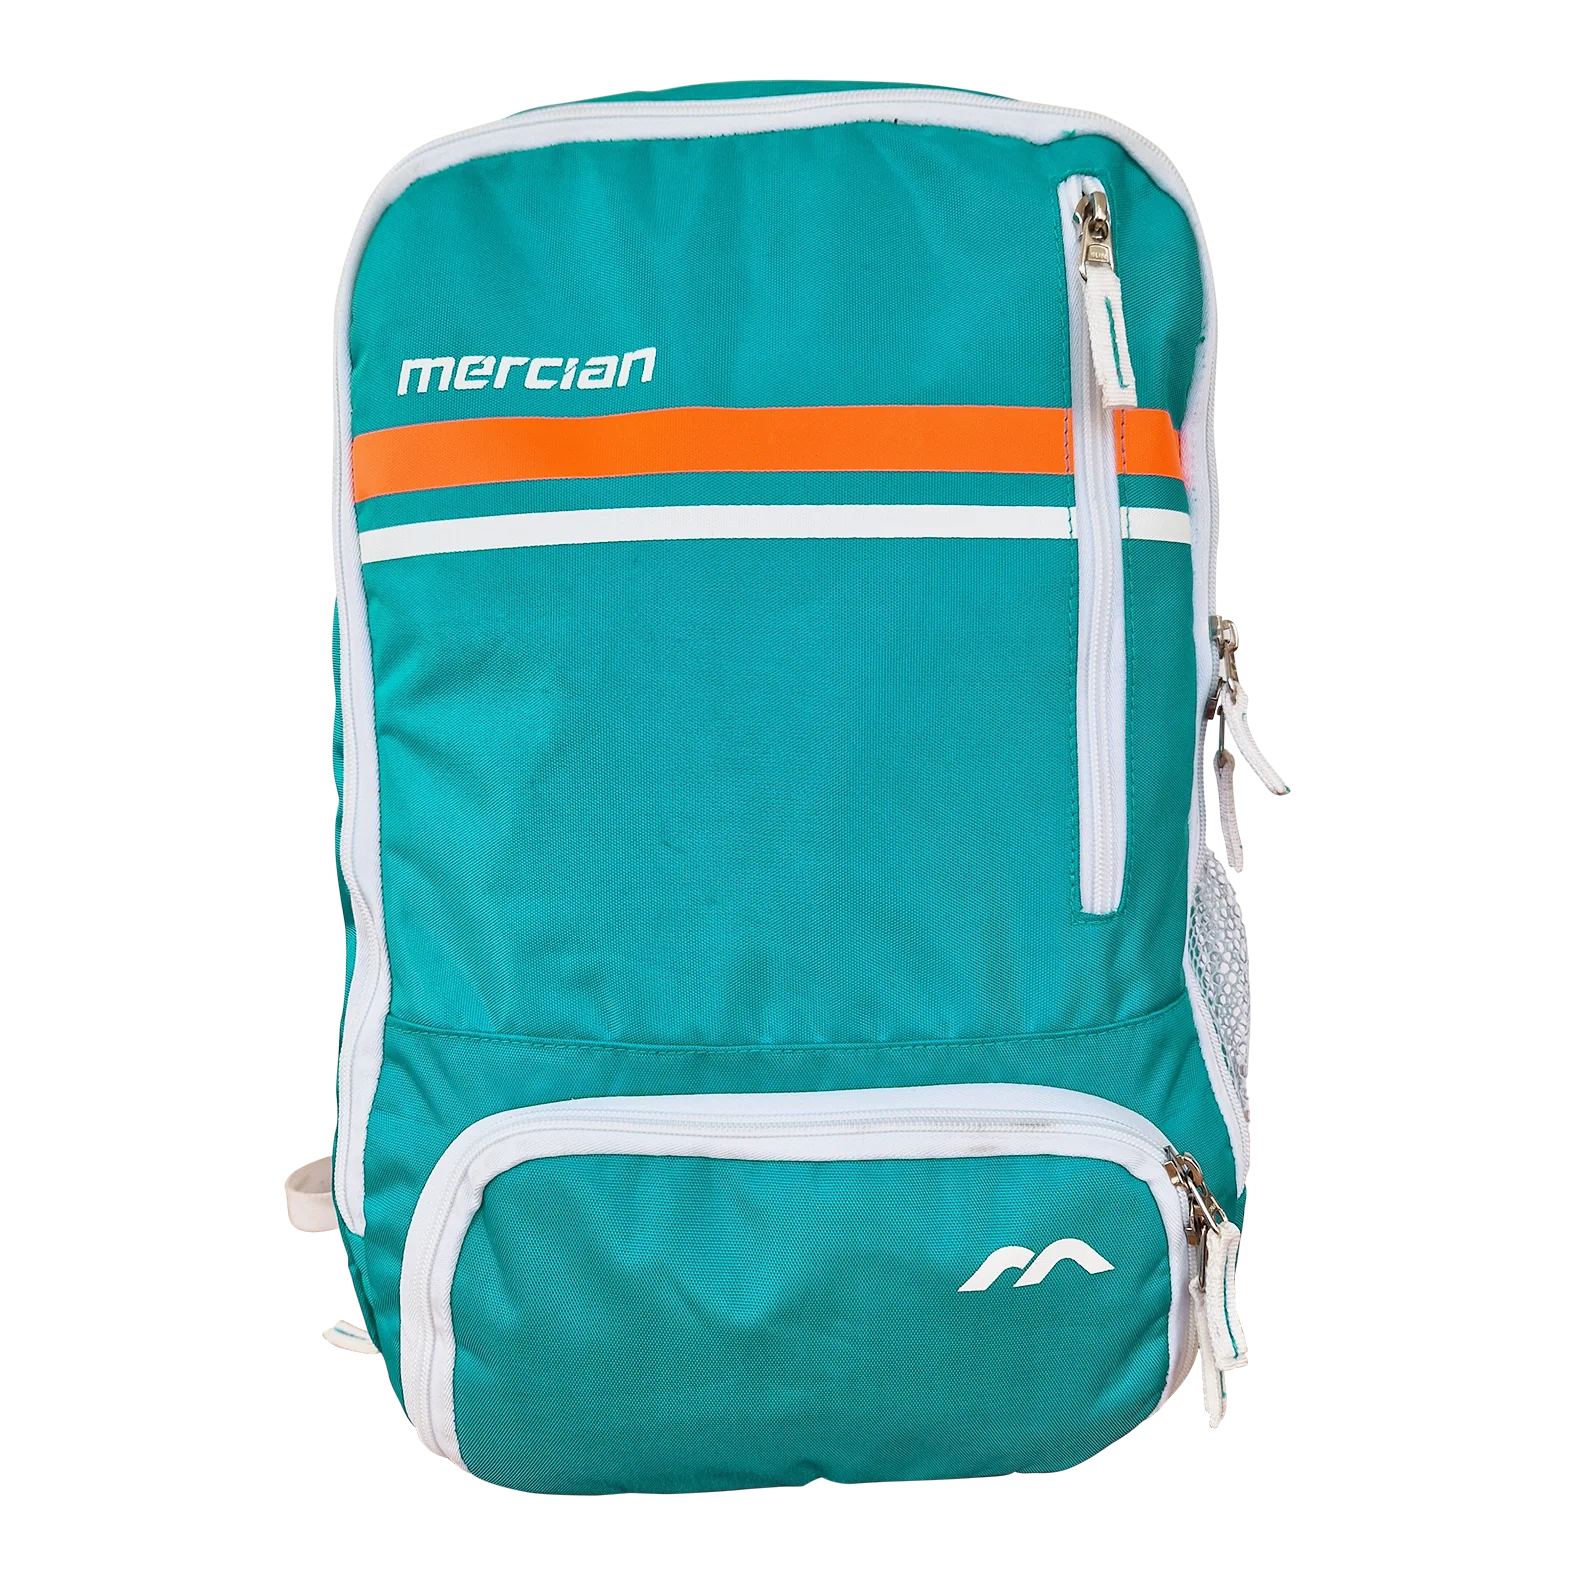 Mercian Genesis 5 Backpack 23'24